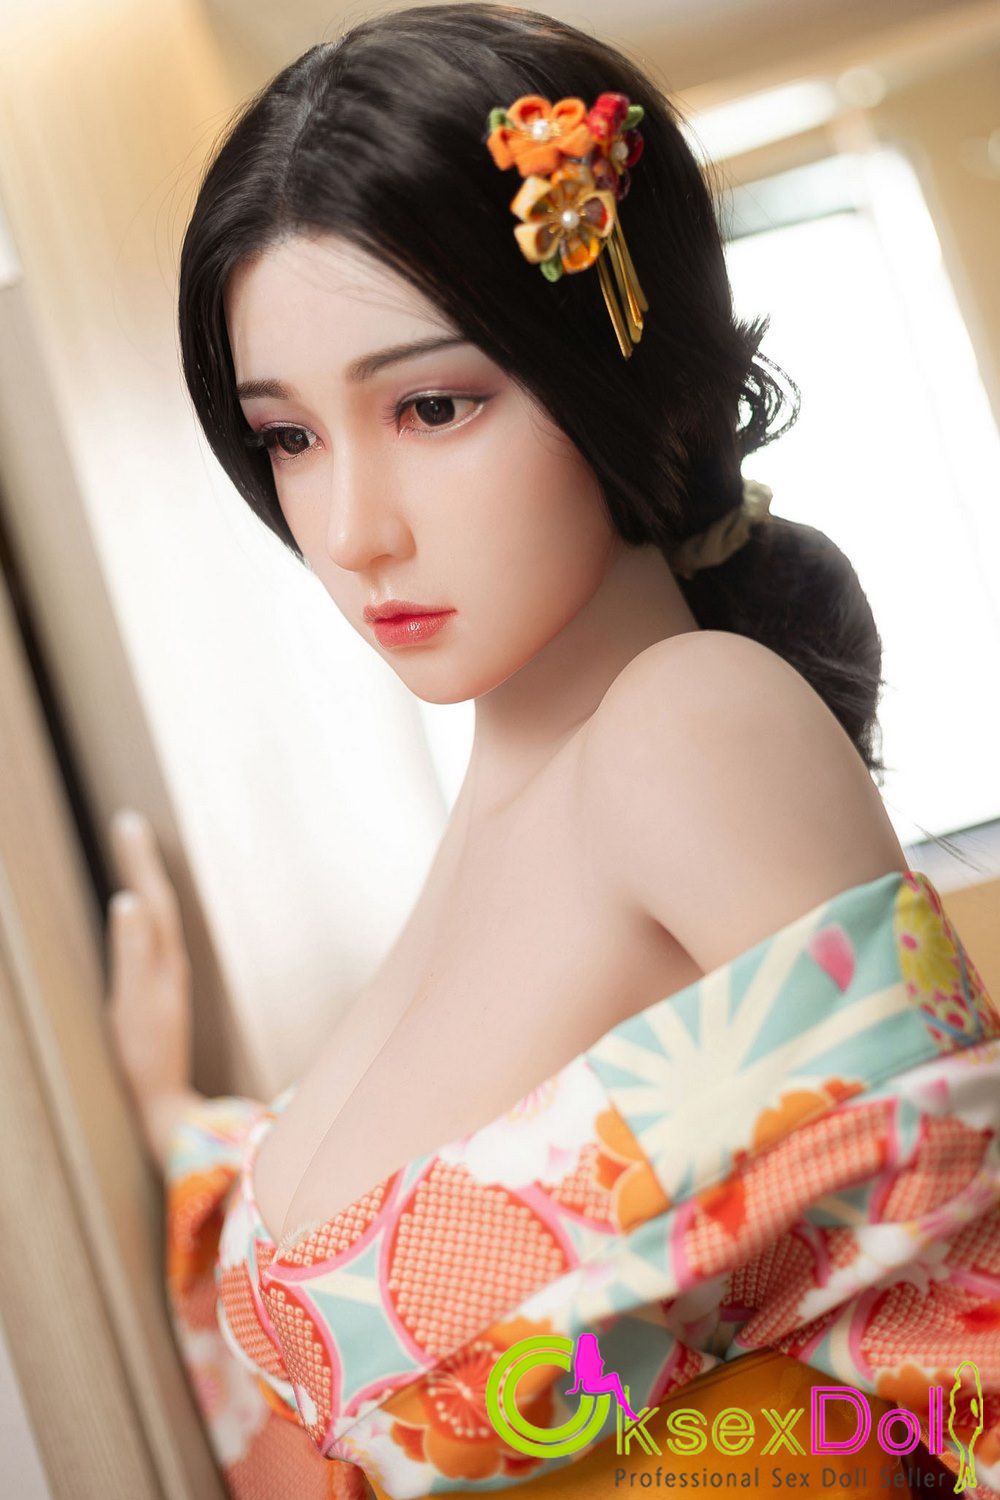 Kimono Beauty Real Doll Gallery